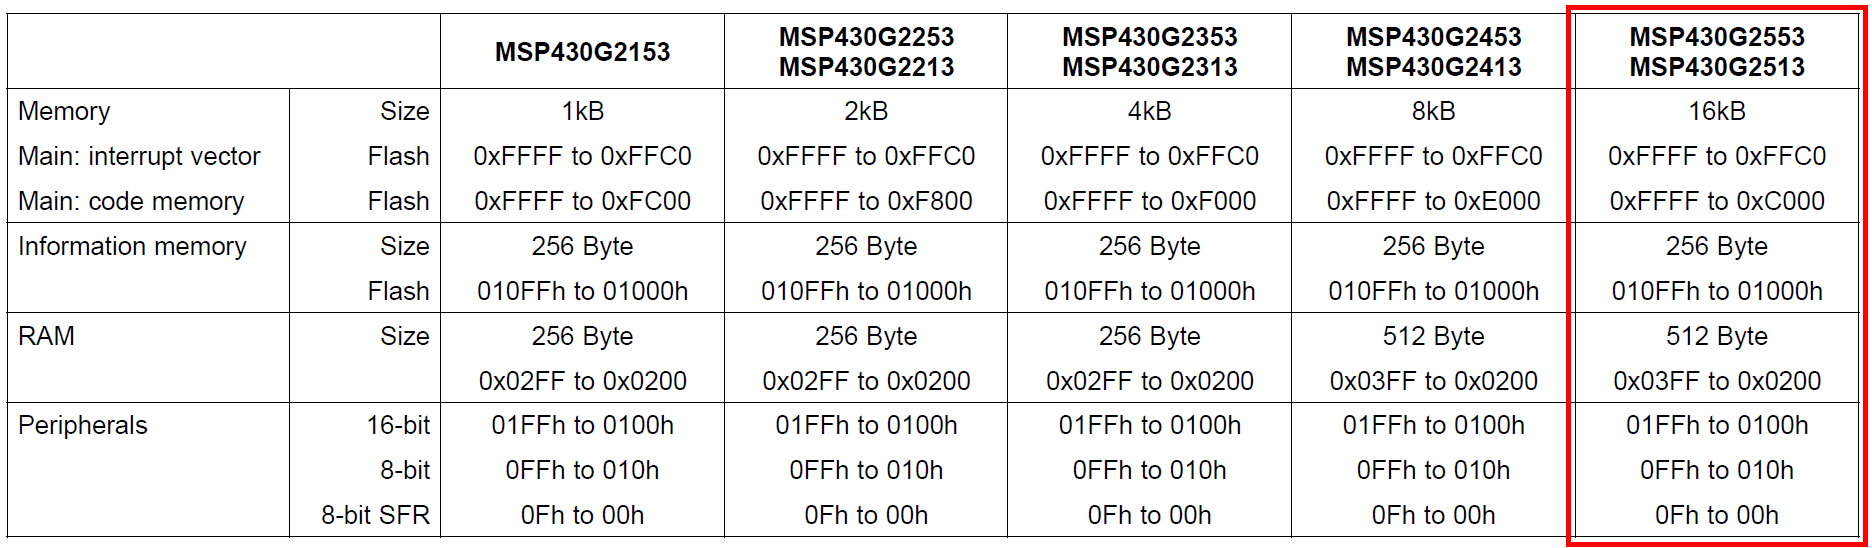 alt:"Adressbereich des MSP430G2553", src:"Datenblatt MSP430G2553, S. 13", w:75